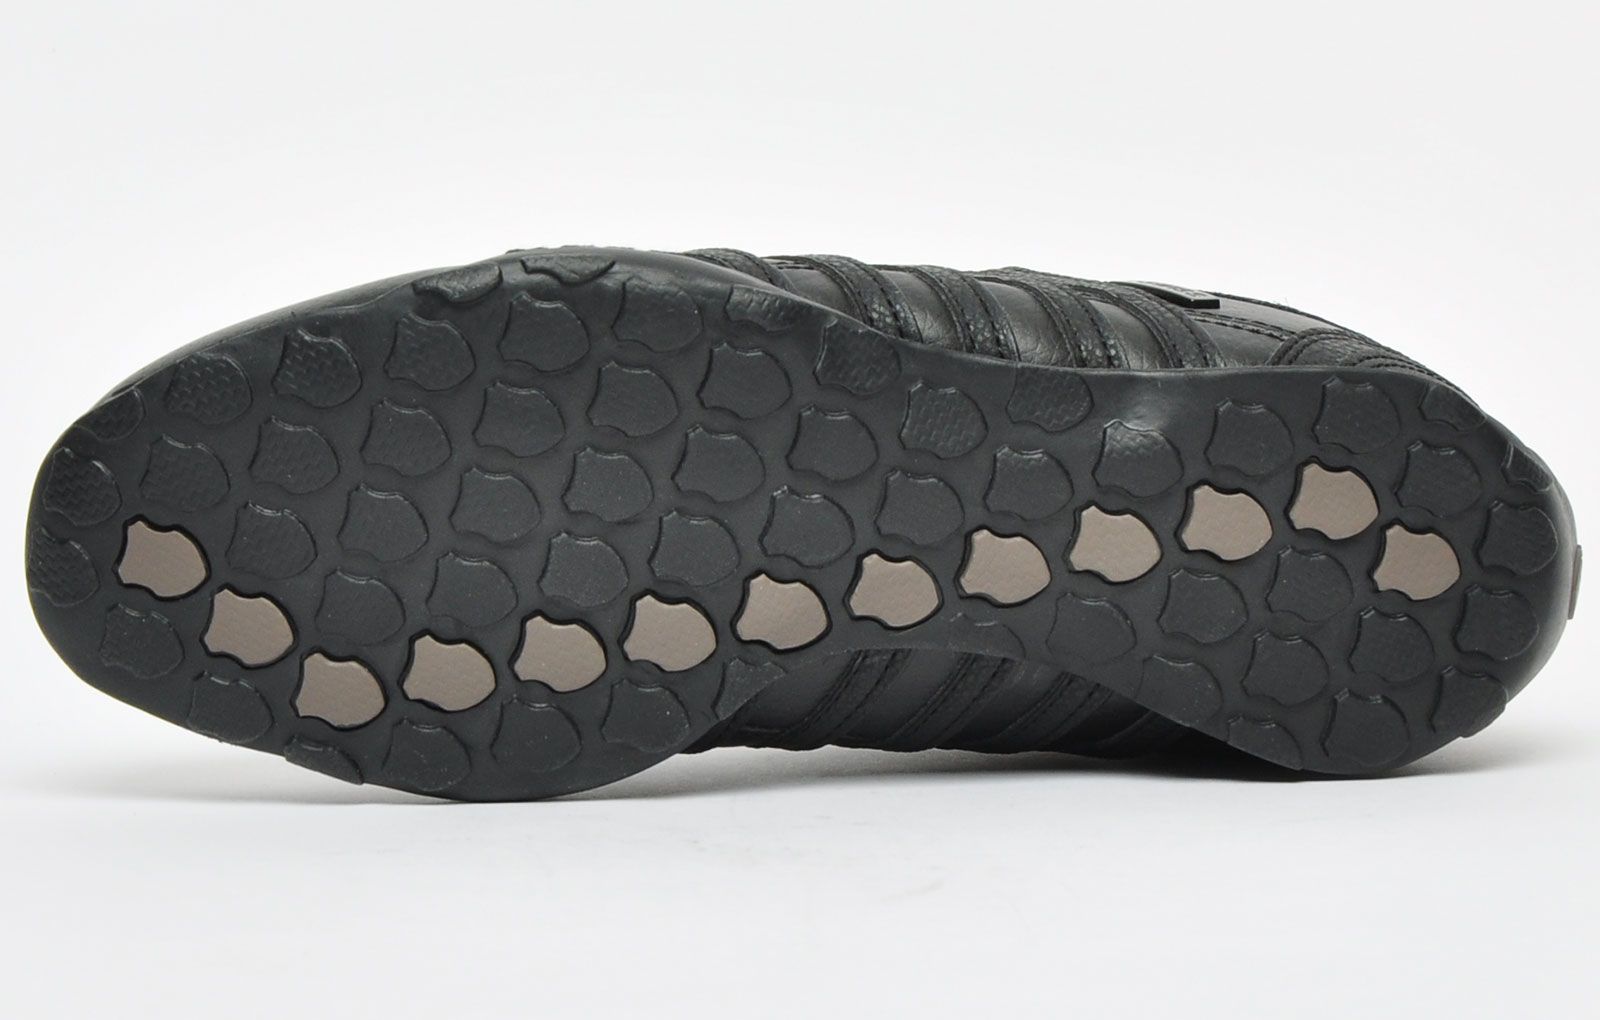 Het bovenwerk van de Arvee is gemaakt van een trendy geheel zwart leer dat de voeten ondersteunt en beschermt, terwijl een klassieke veter aan de voorkant een veilige pasvorm biedt.